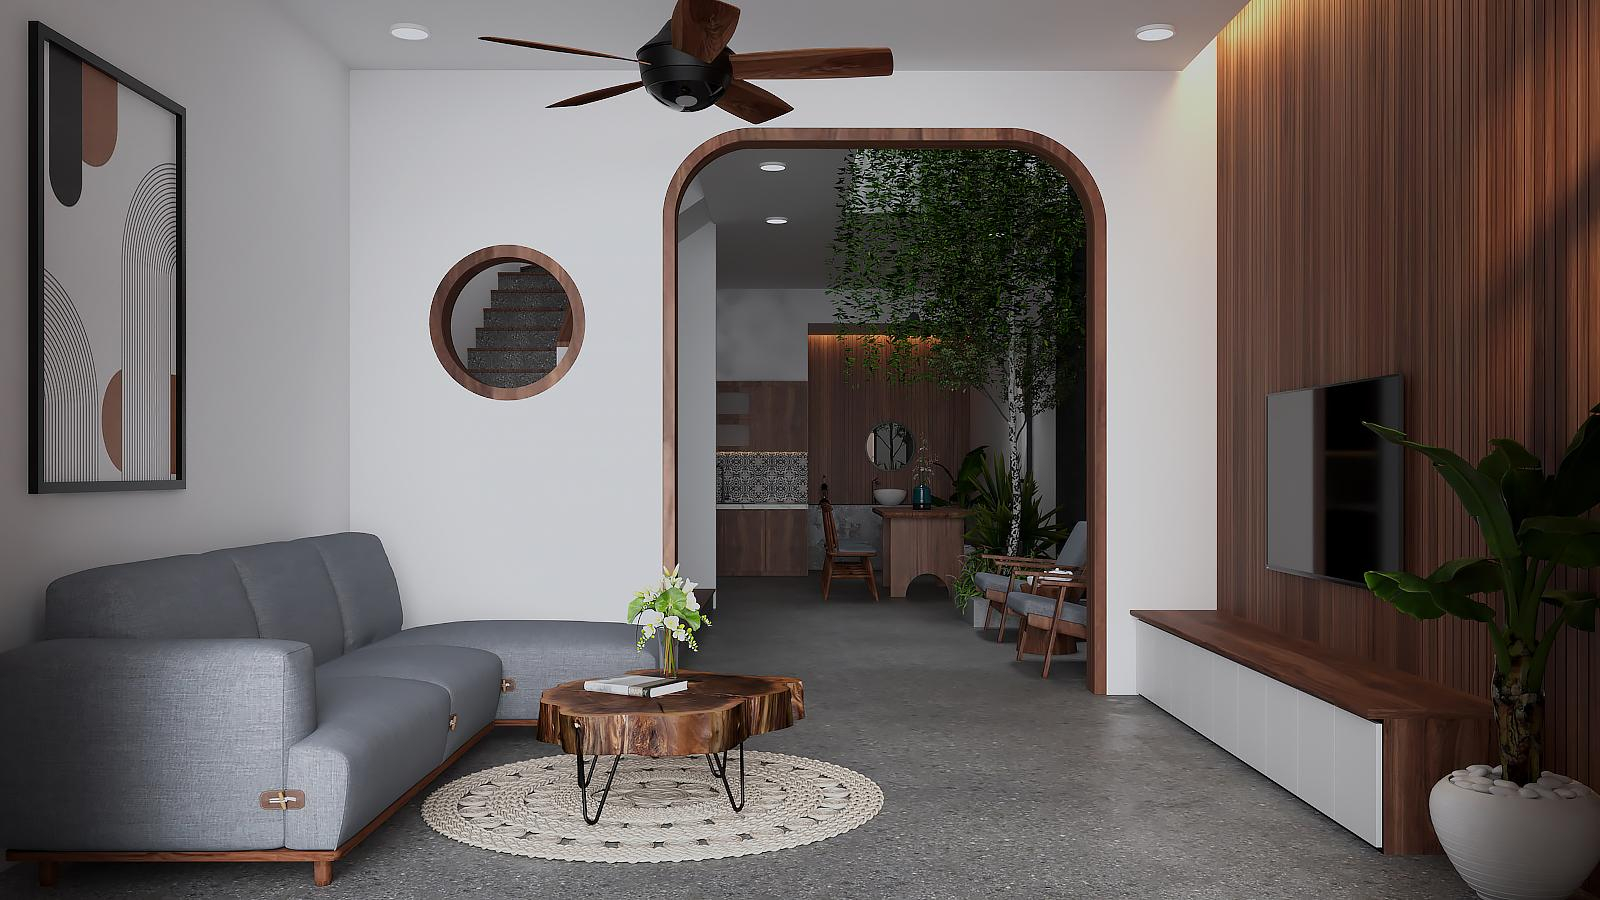 15+ mẫu thiết kế phòng khách nhà ống 4m đẹp, hiện đại và thông thoáng